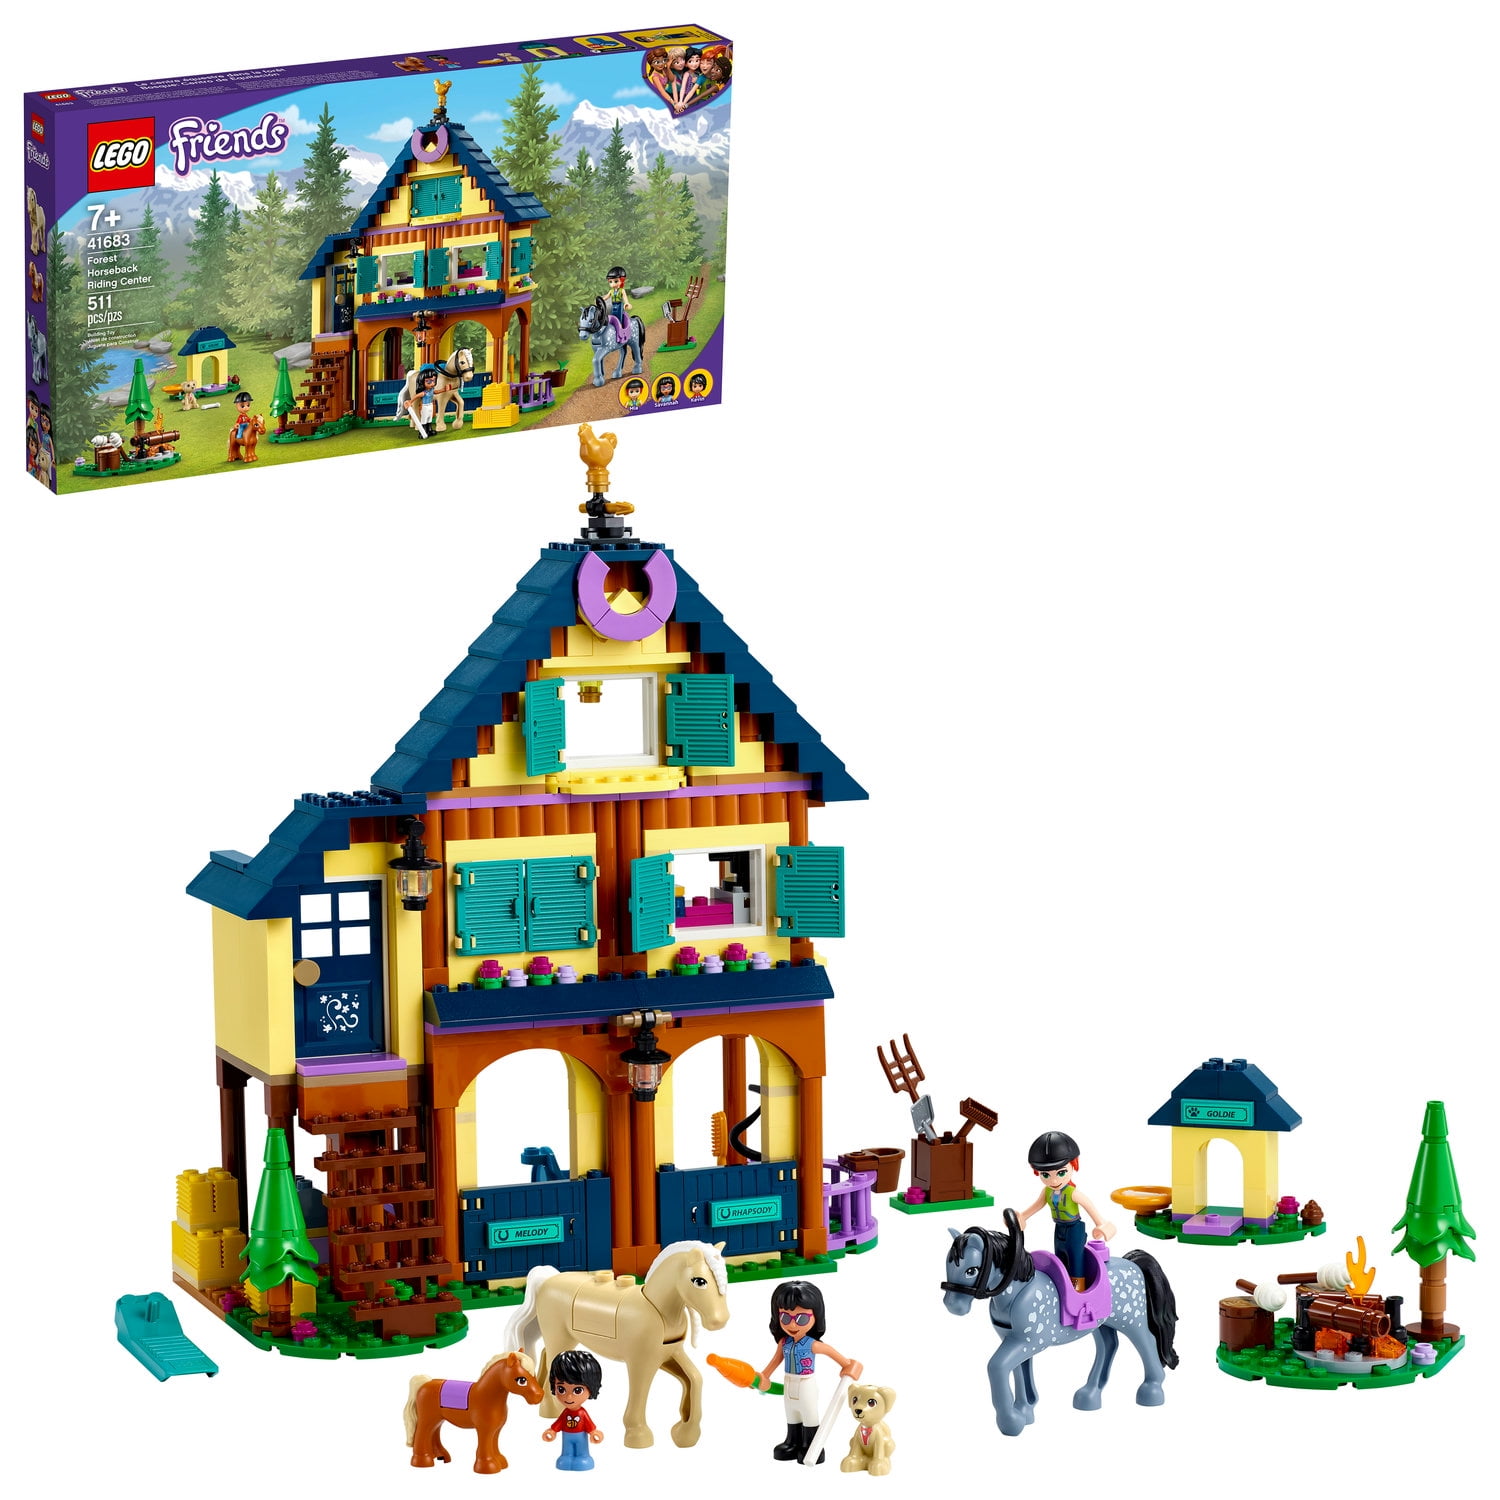 for meget Politik sikkerhedsstillelse LEGO Friends Forest Horseback Riding Center 41683 Building Toy; Makes a  Great Gift (511 Pieces) - Walmart.com